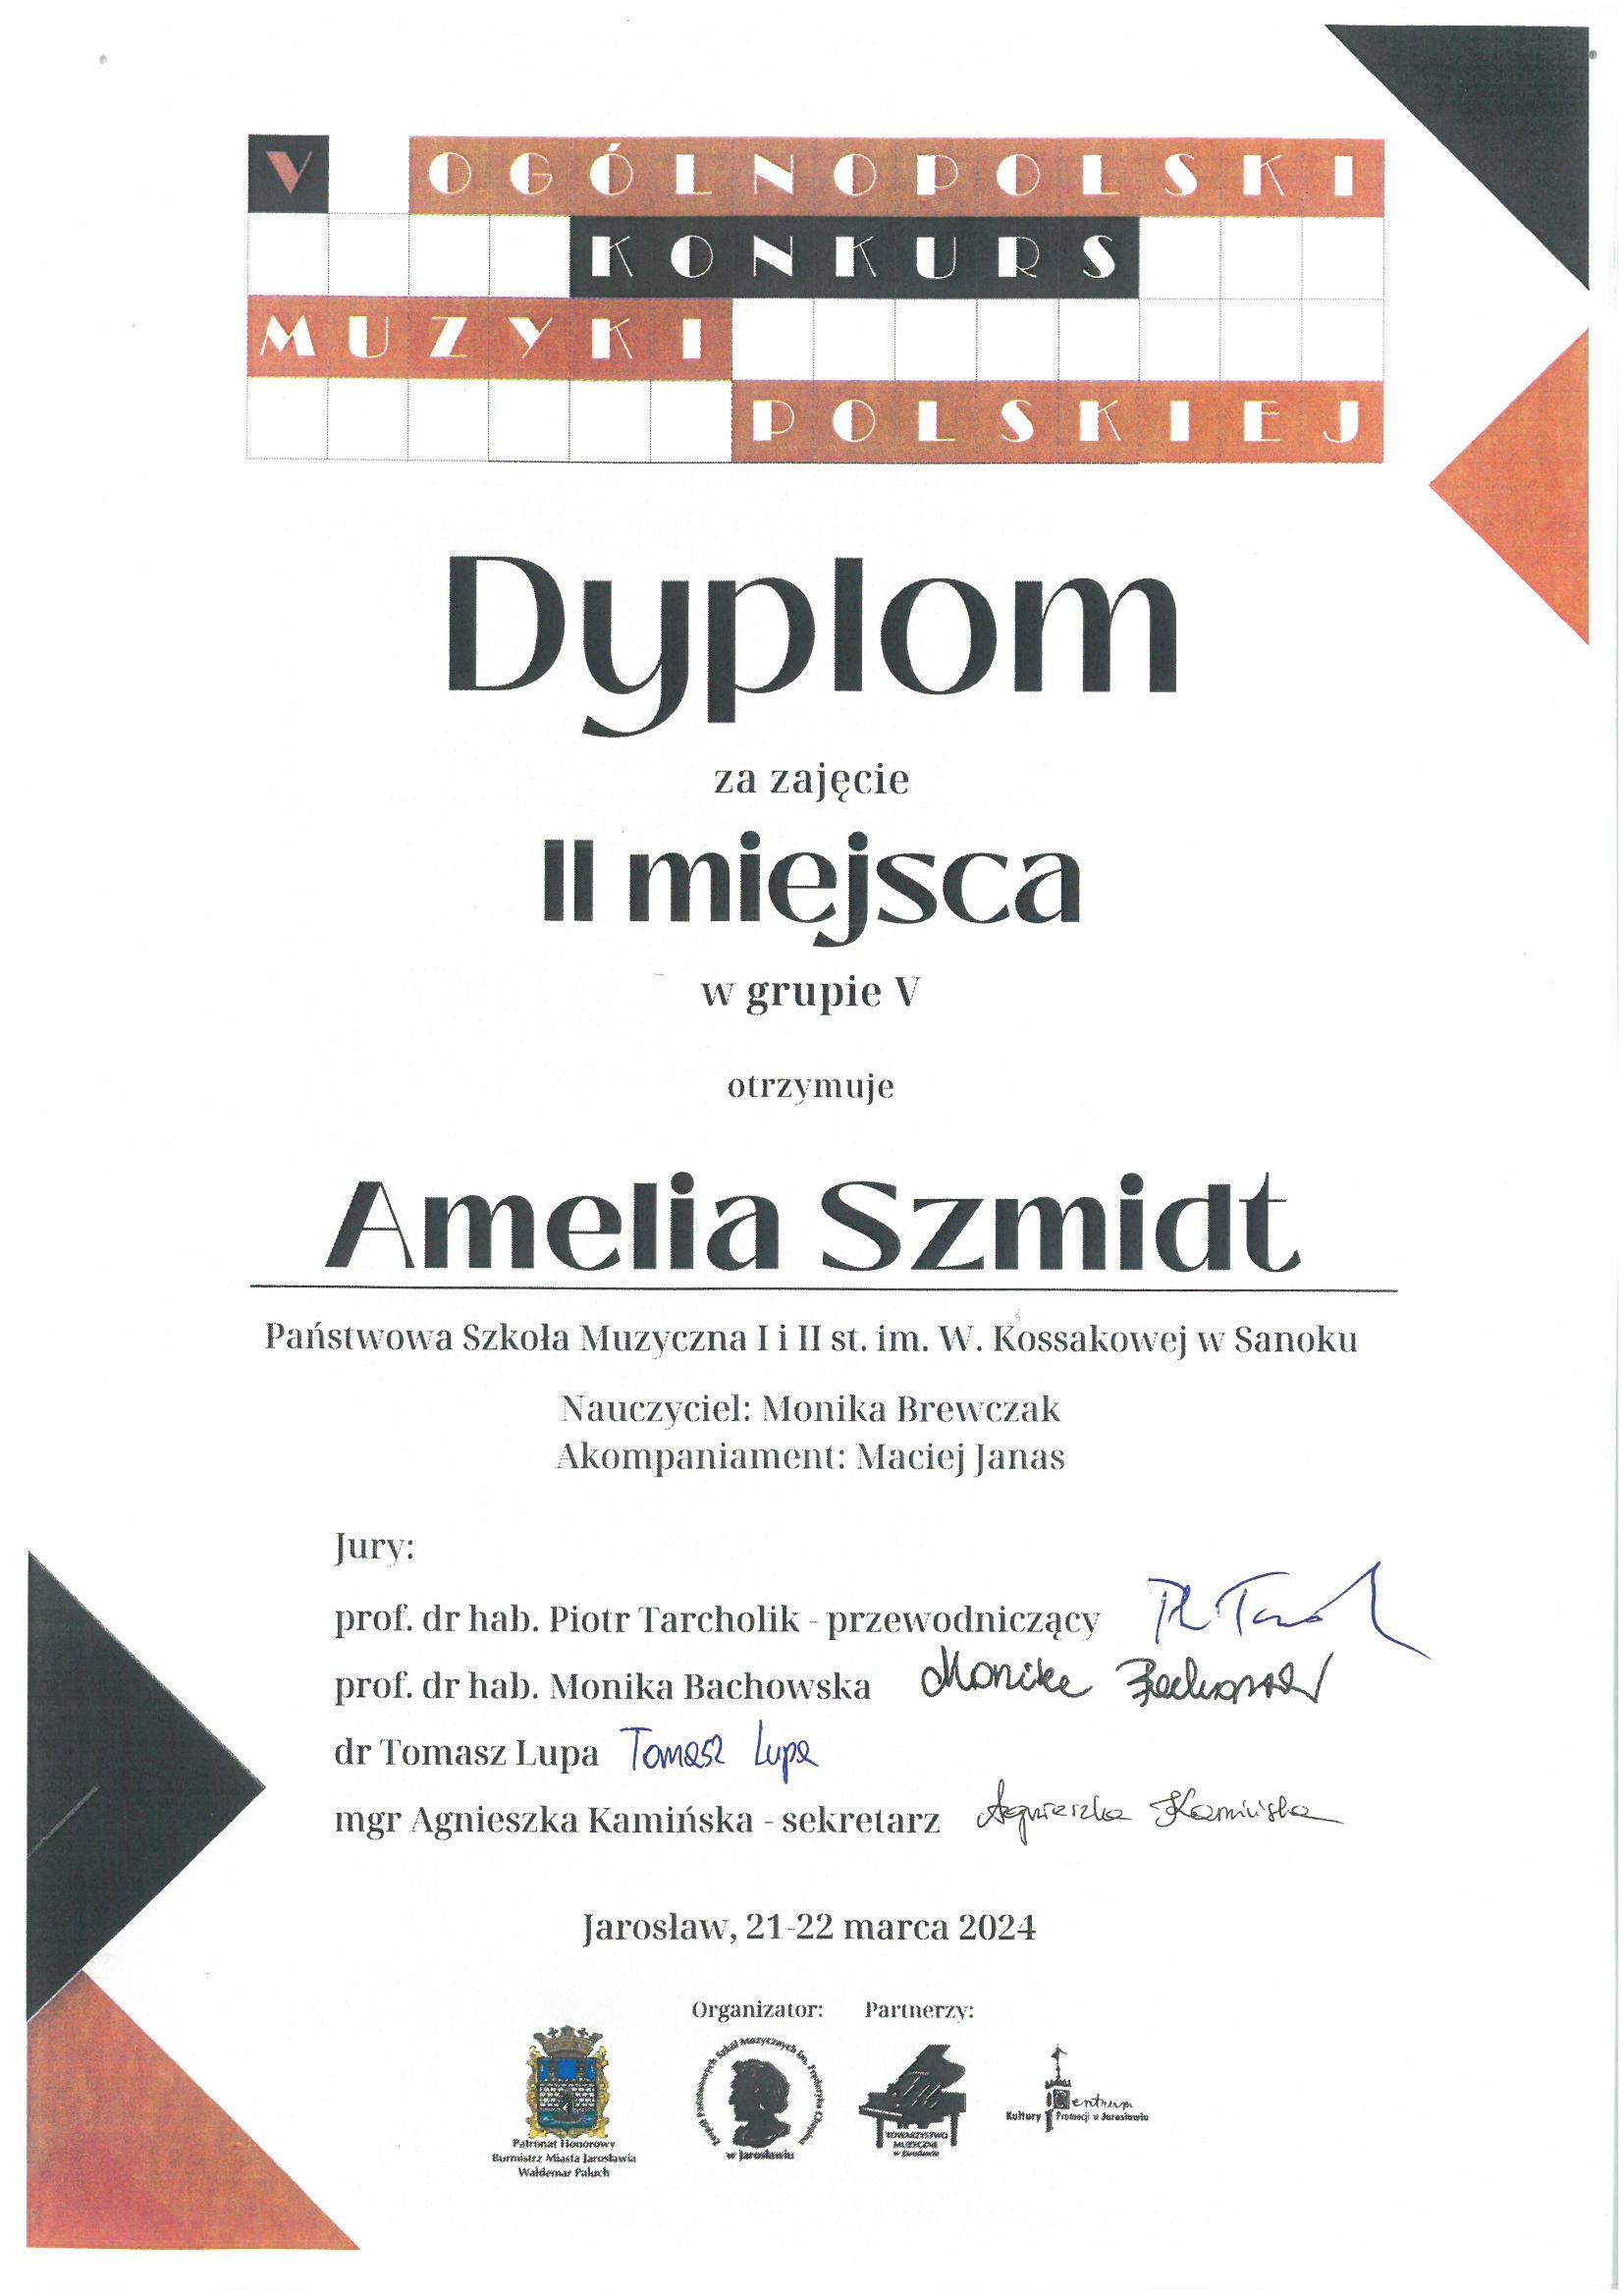 Dyplom - Amelia Szmidt - 2 miejsce w V Ogólnopolskim Konkursie Muzyki Polskiej w Jarosławiu. Czarne litery na białym tle, w rogach kolorowe trójkąty.